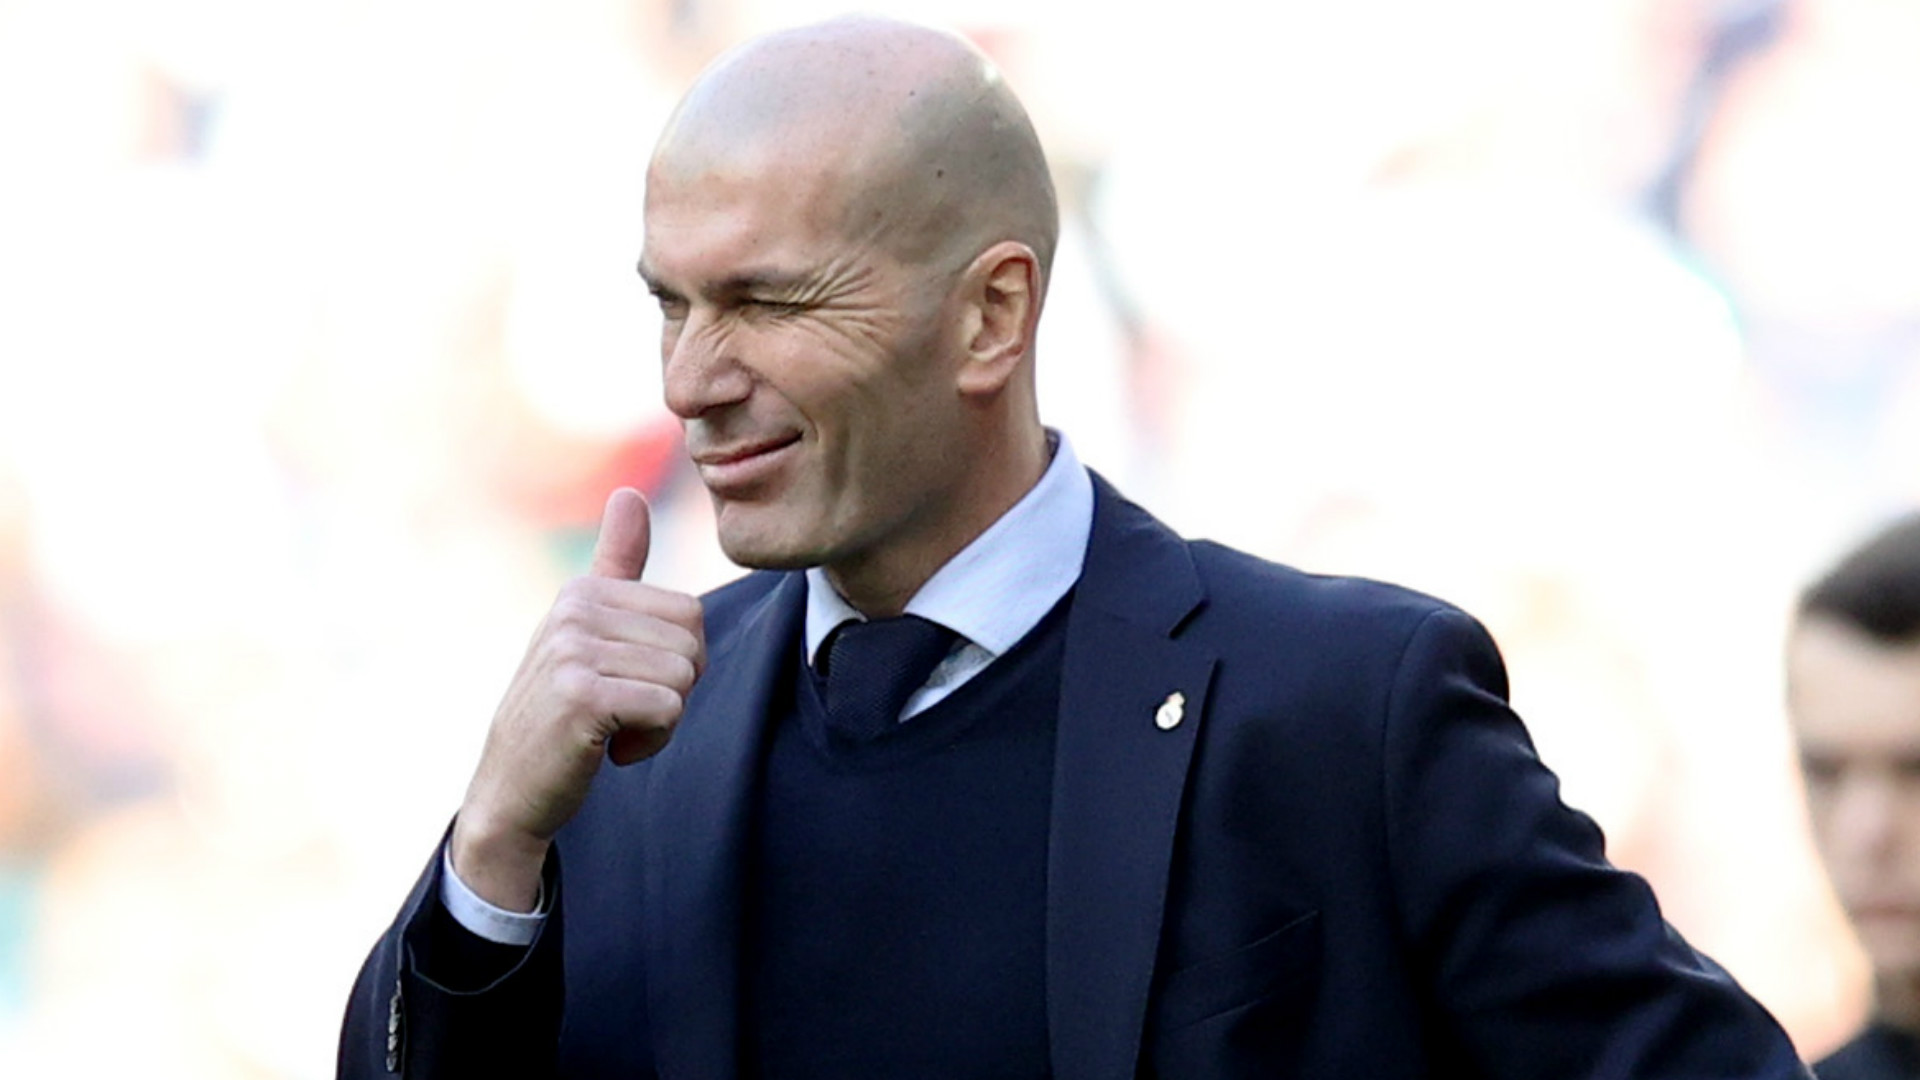 La nouvelle réponse de Zidane aux sollicitations du PSG dévoilée